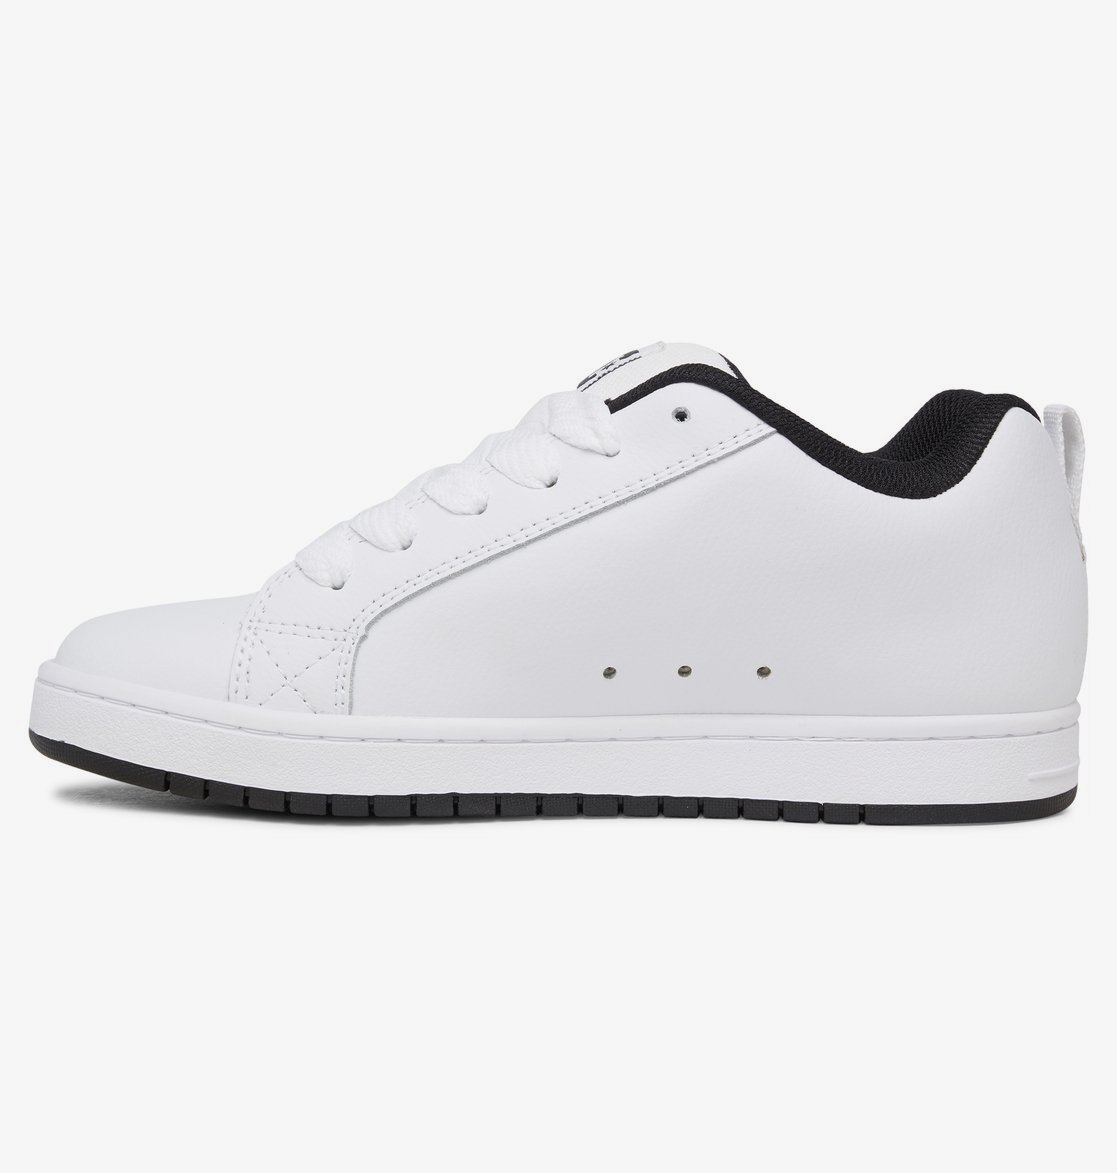 Visiter la boutique DC ShoesDC Shoes Court Graffik Basket Homme 52 EU Black Multi White 